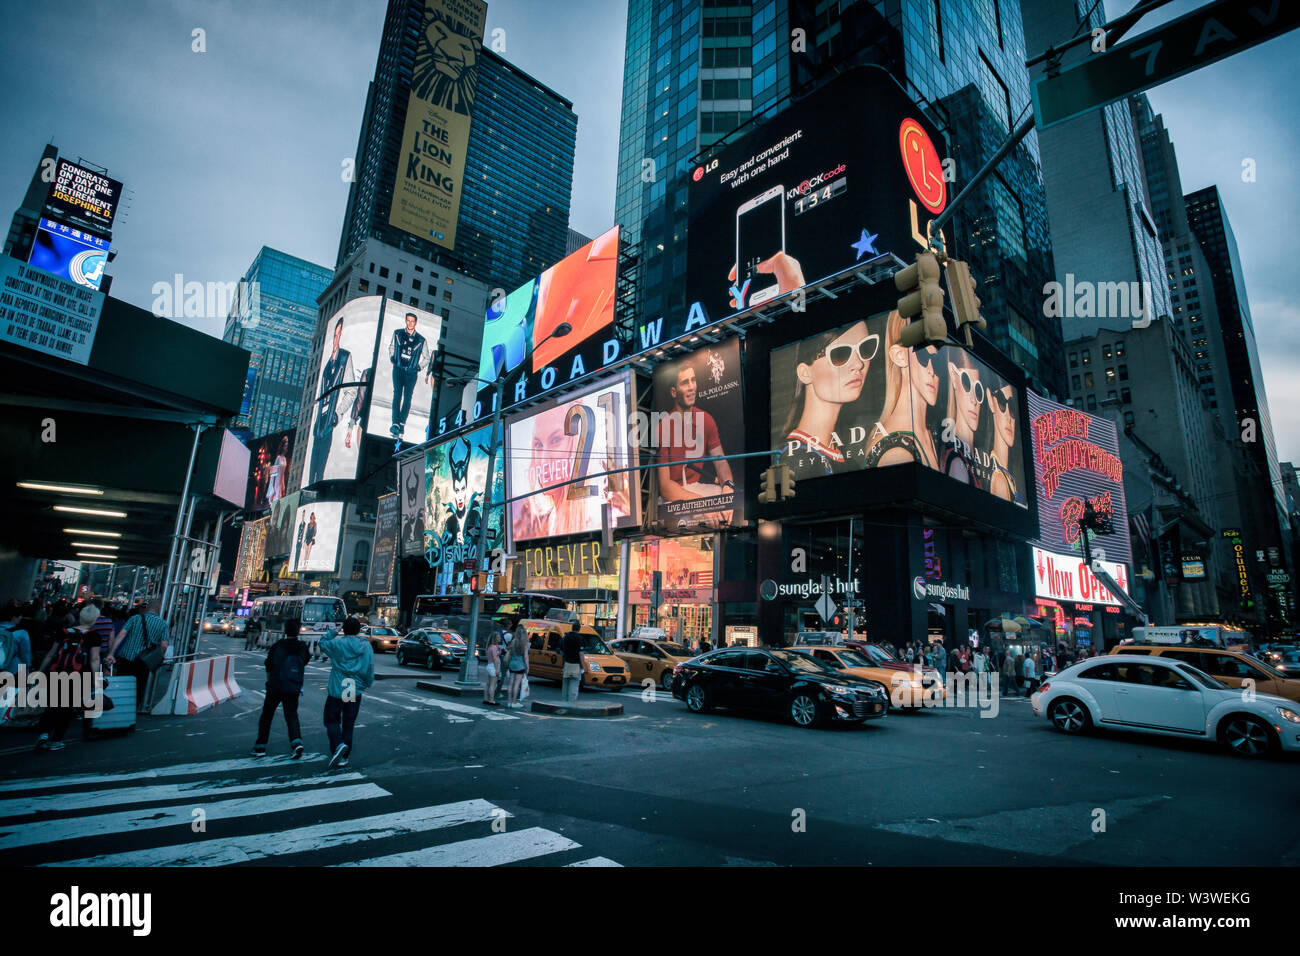 New York City, USA - 20. Mai 2014: Times Square in einer ruhigen Abend. Die Menschen sind zu Fuß auf den Bürgersteigen, Taxis stehen auf der Straße und Werbung bi Stockfoto